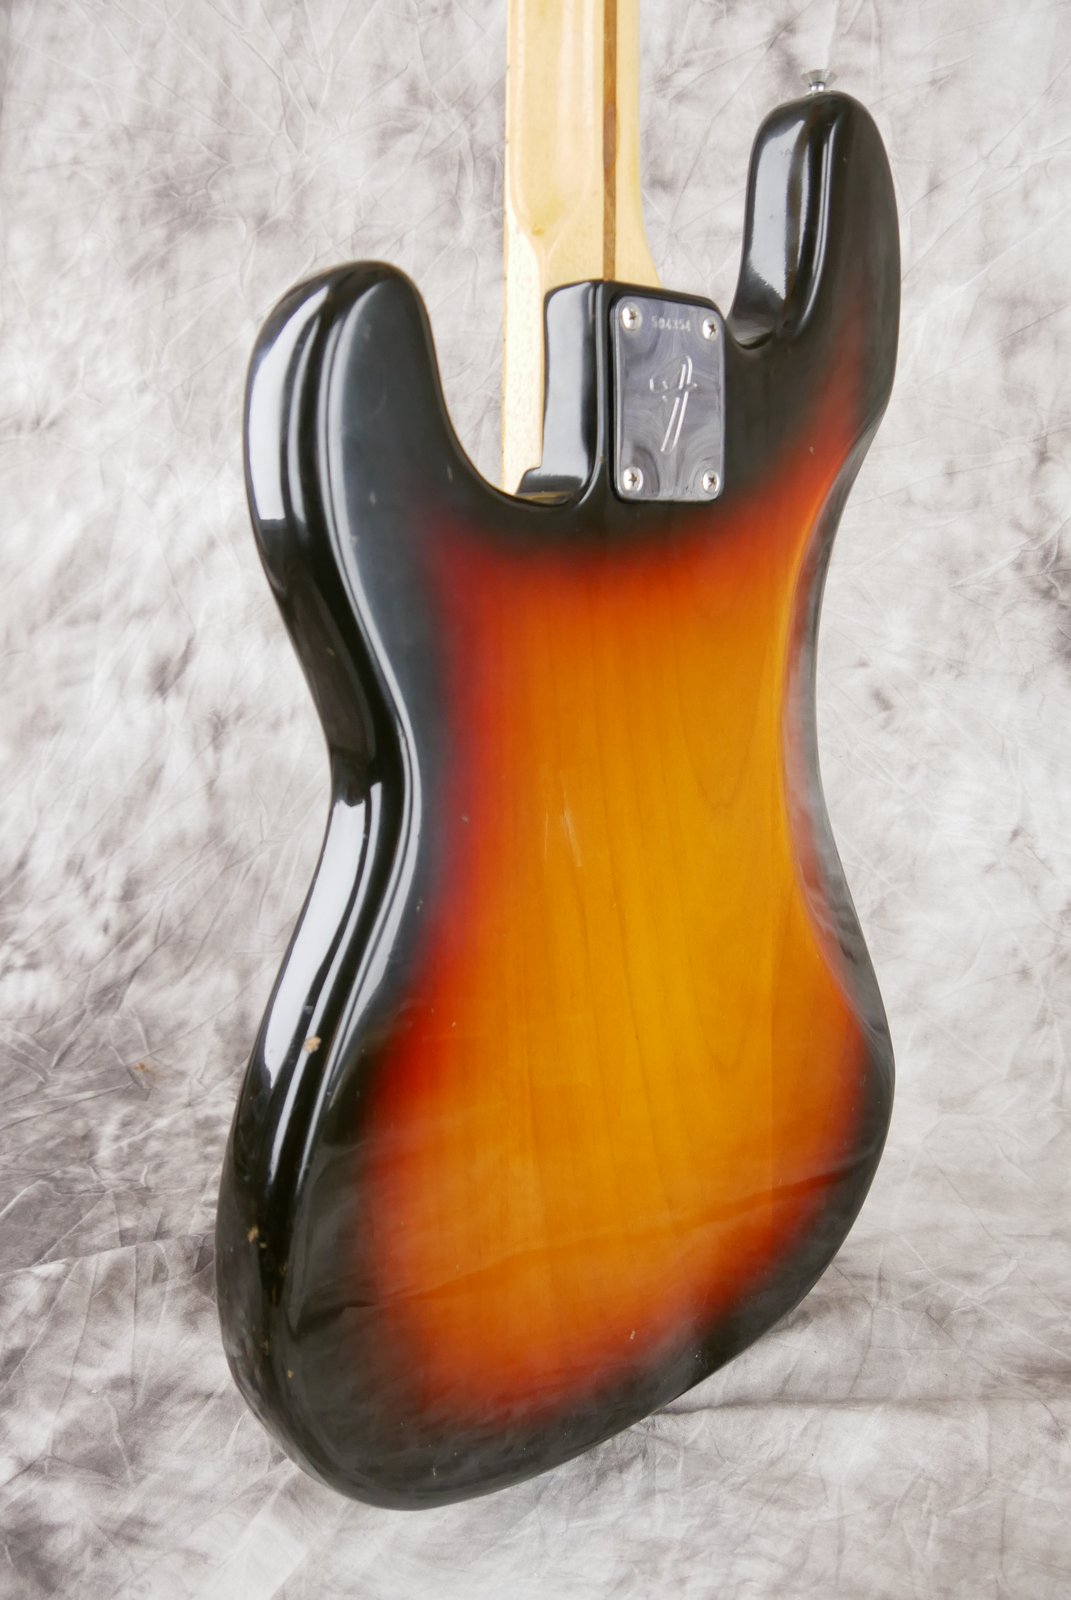 Fender-Precision-Bass-1974-sunburst-007.JPG